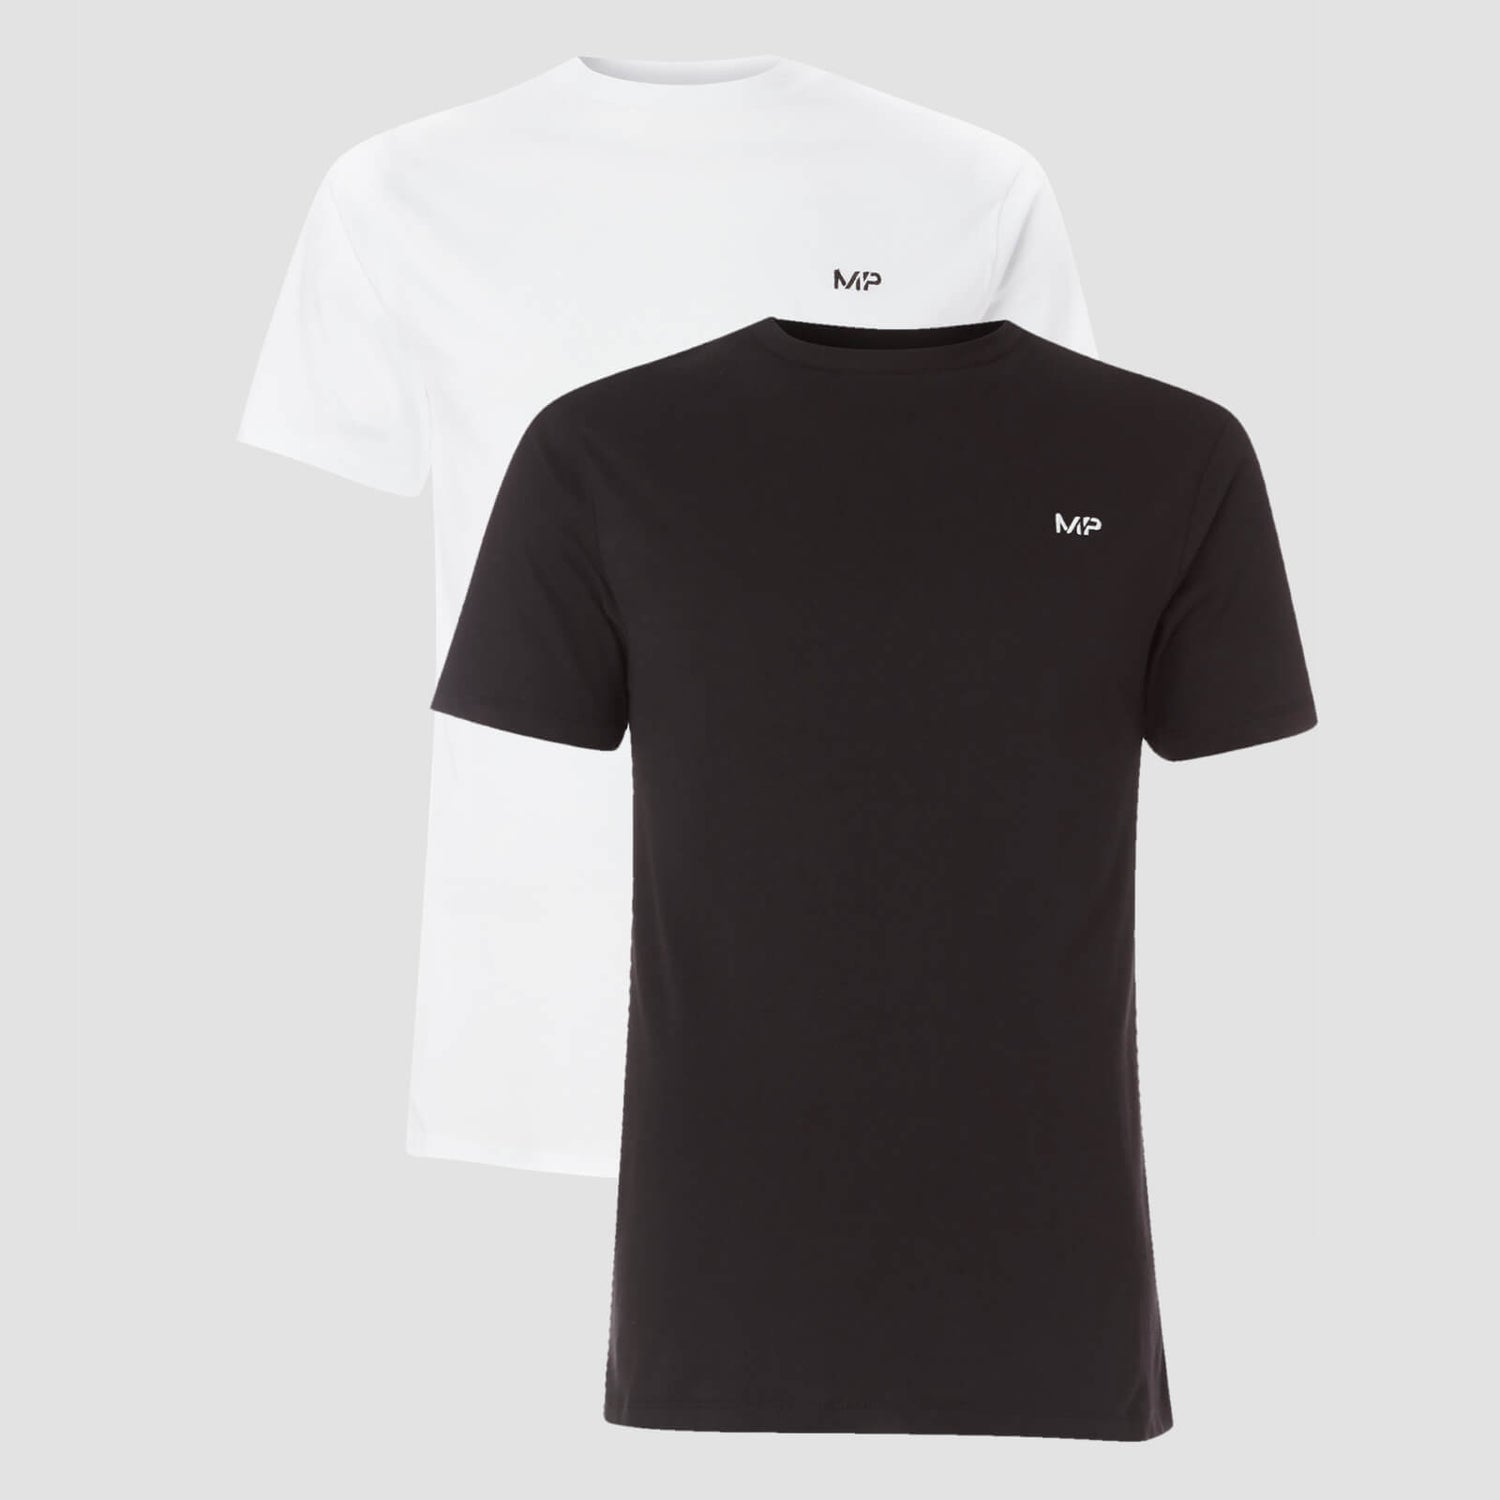 남성용 에센셜 티셔츠 - 블랙/화이트 (2팩)